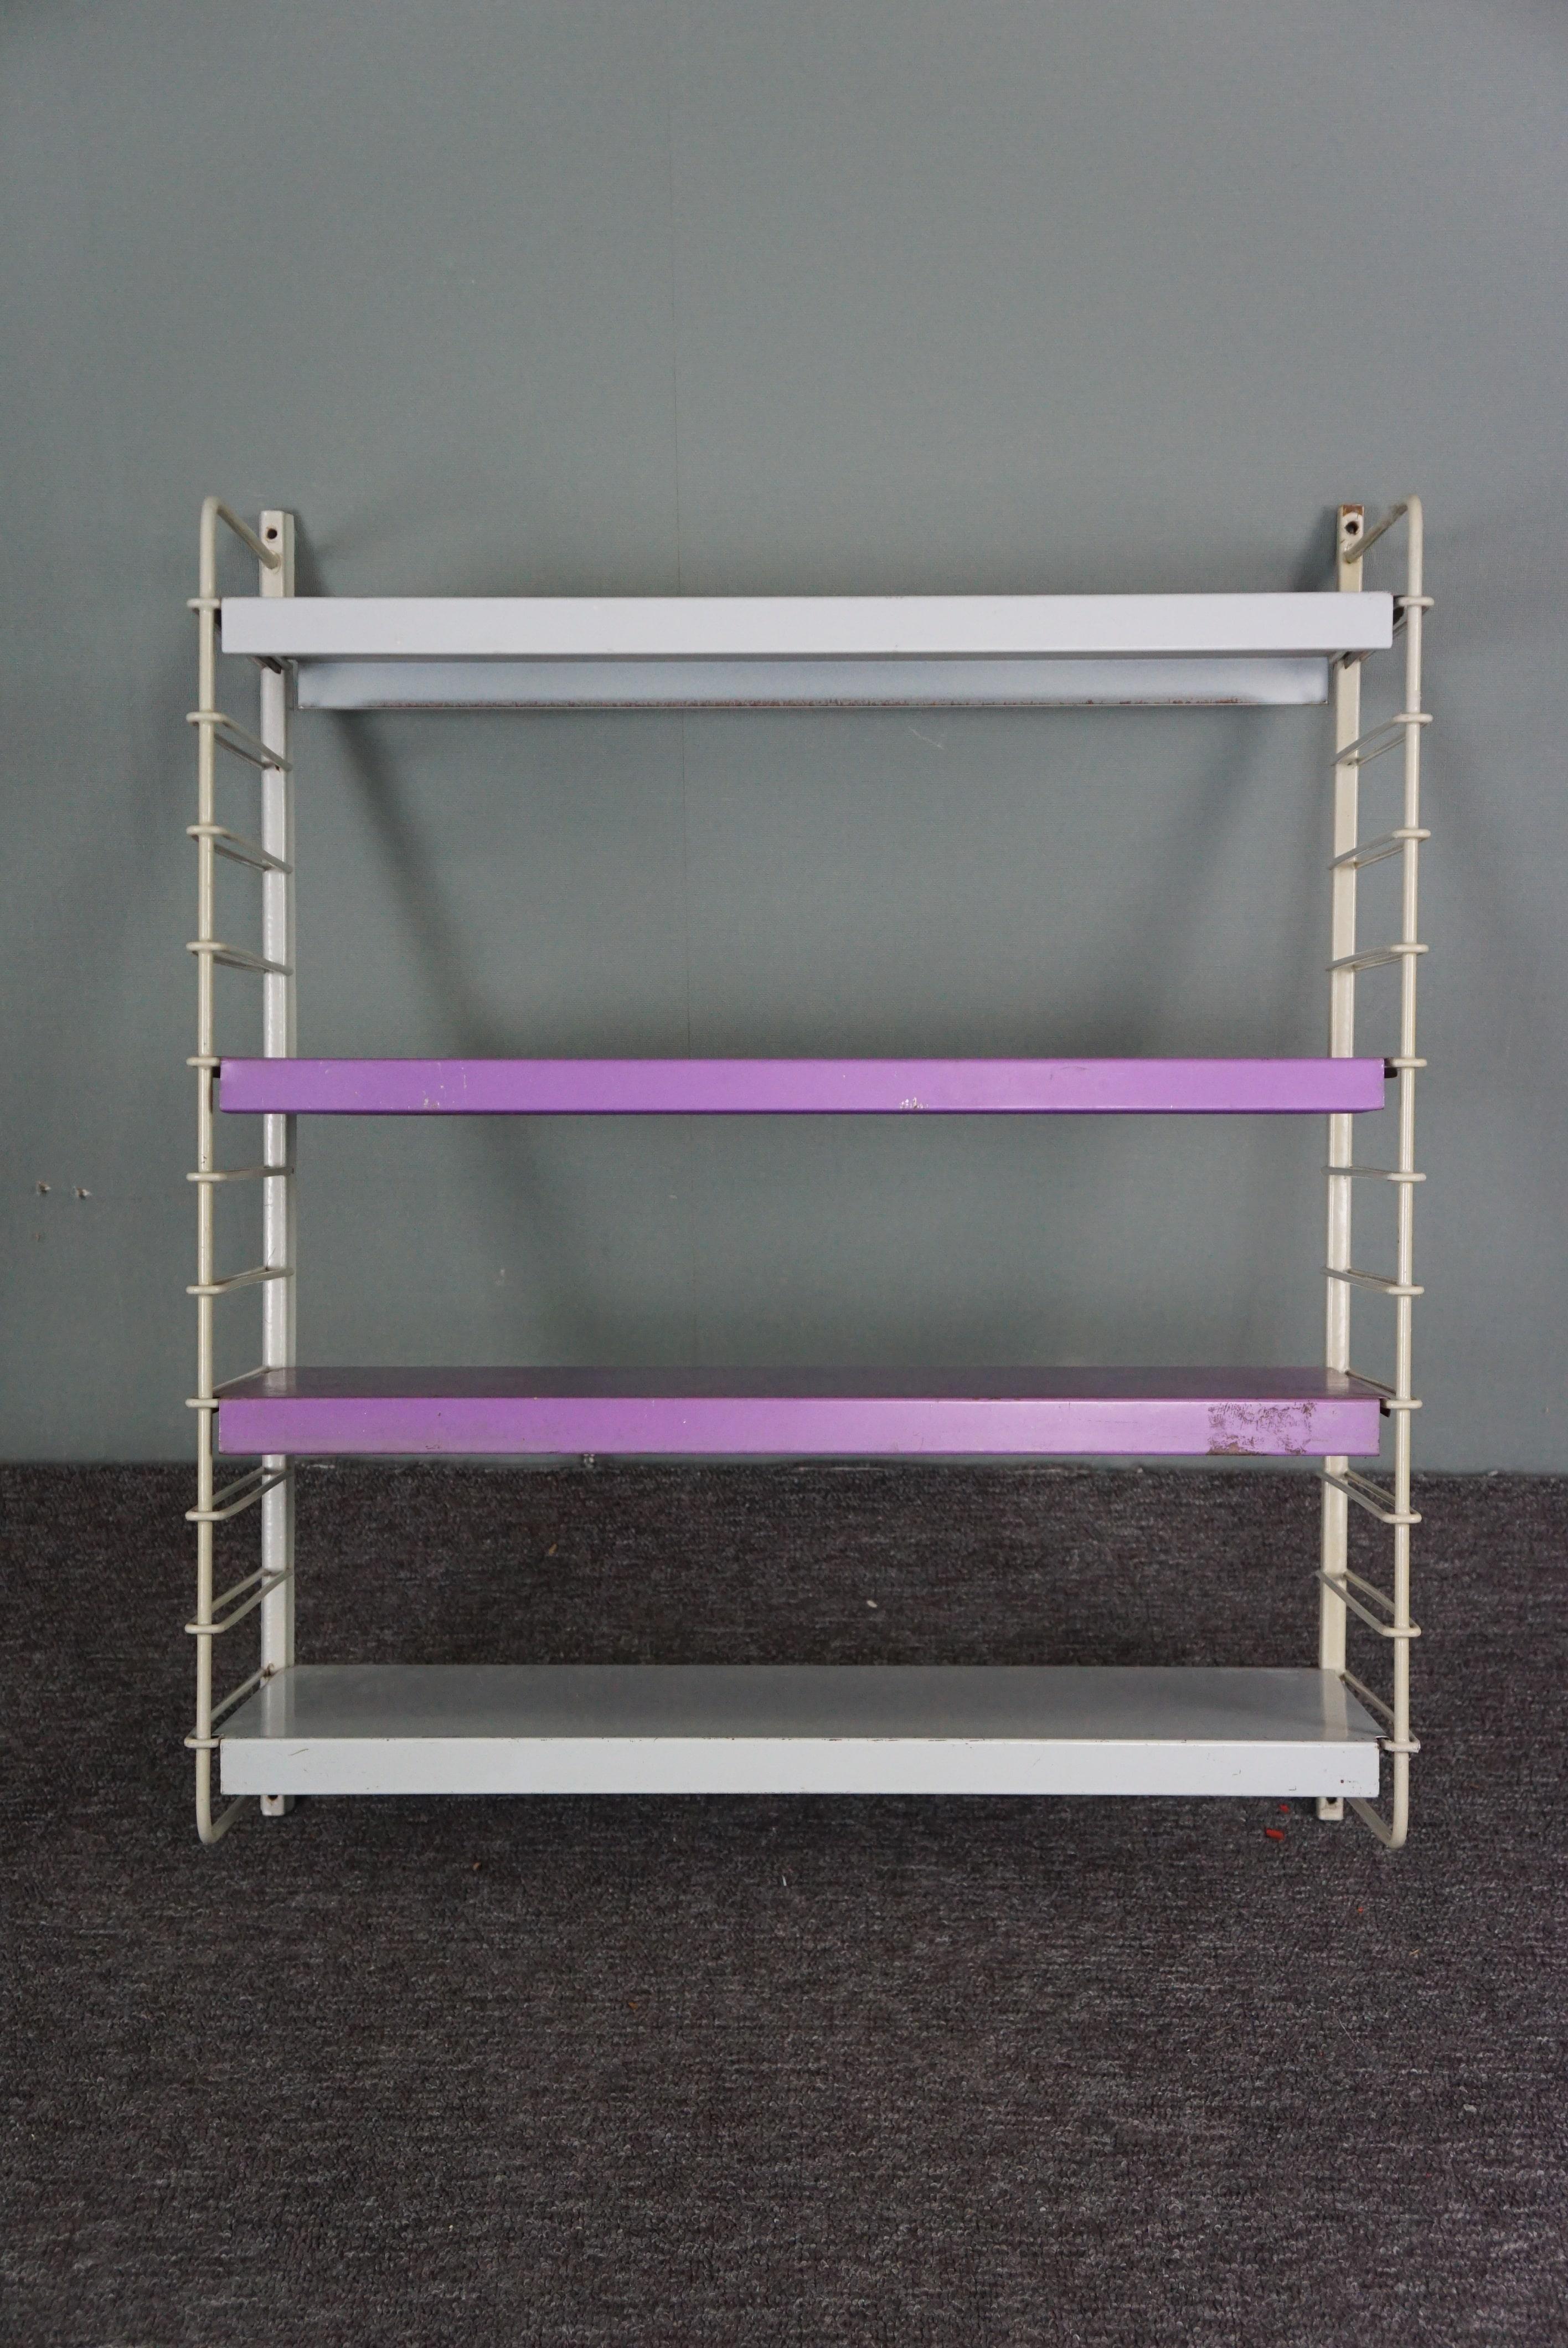 Cette icône de style moderniste est proposée en violet et en gris.

Cette étagère murale/unité murale se compose de deux parties murales et de quatre étagères qui peuvent être placées à votre guise afin que vous puissiez modifier/compléter